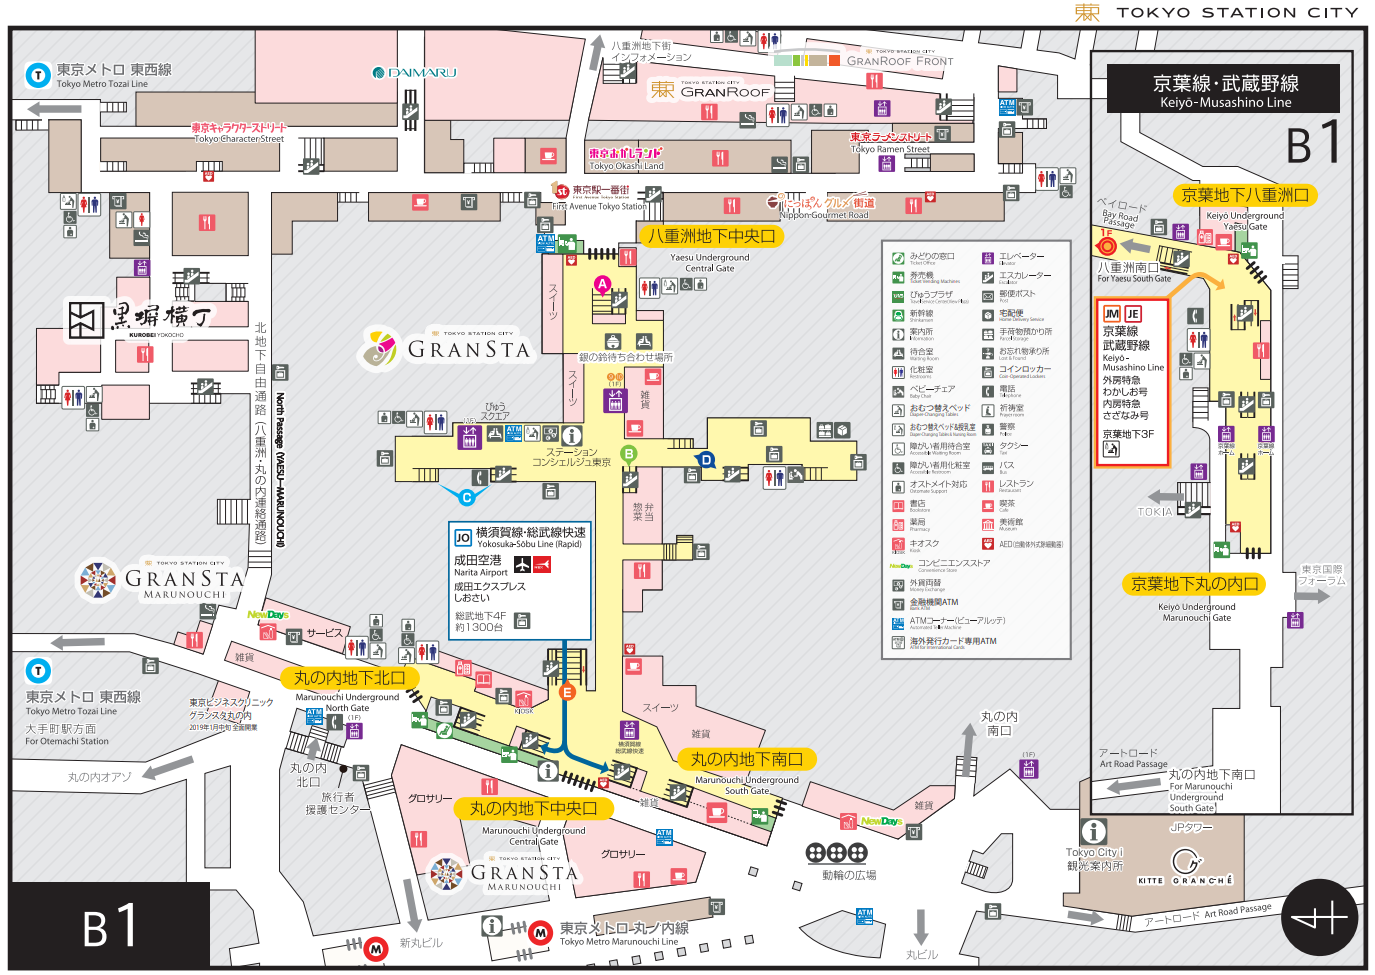 東京駅のわかりやすい構内図を選んでみた 構内図どっとこむ